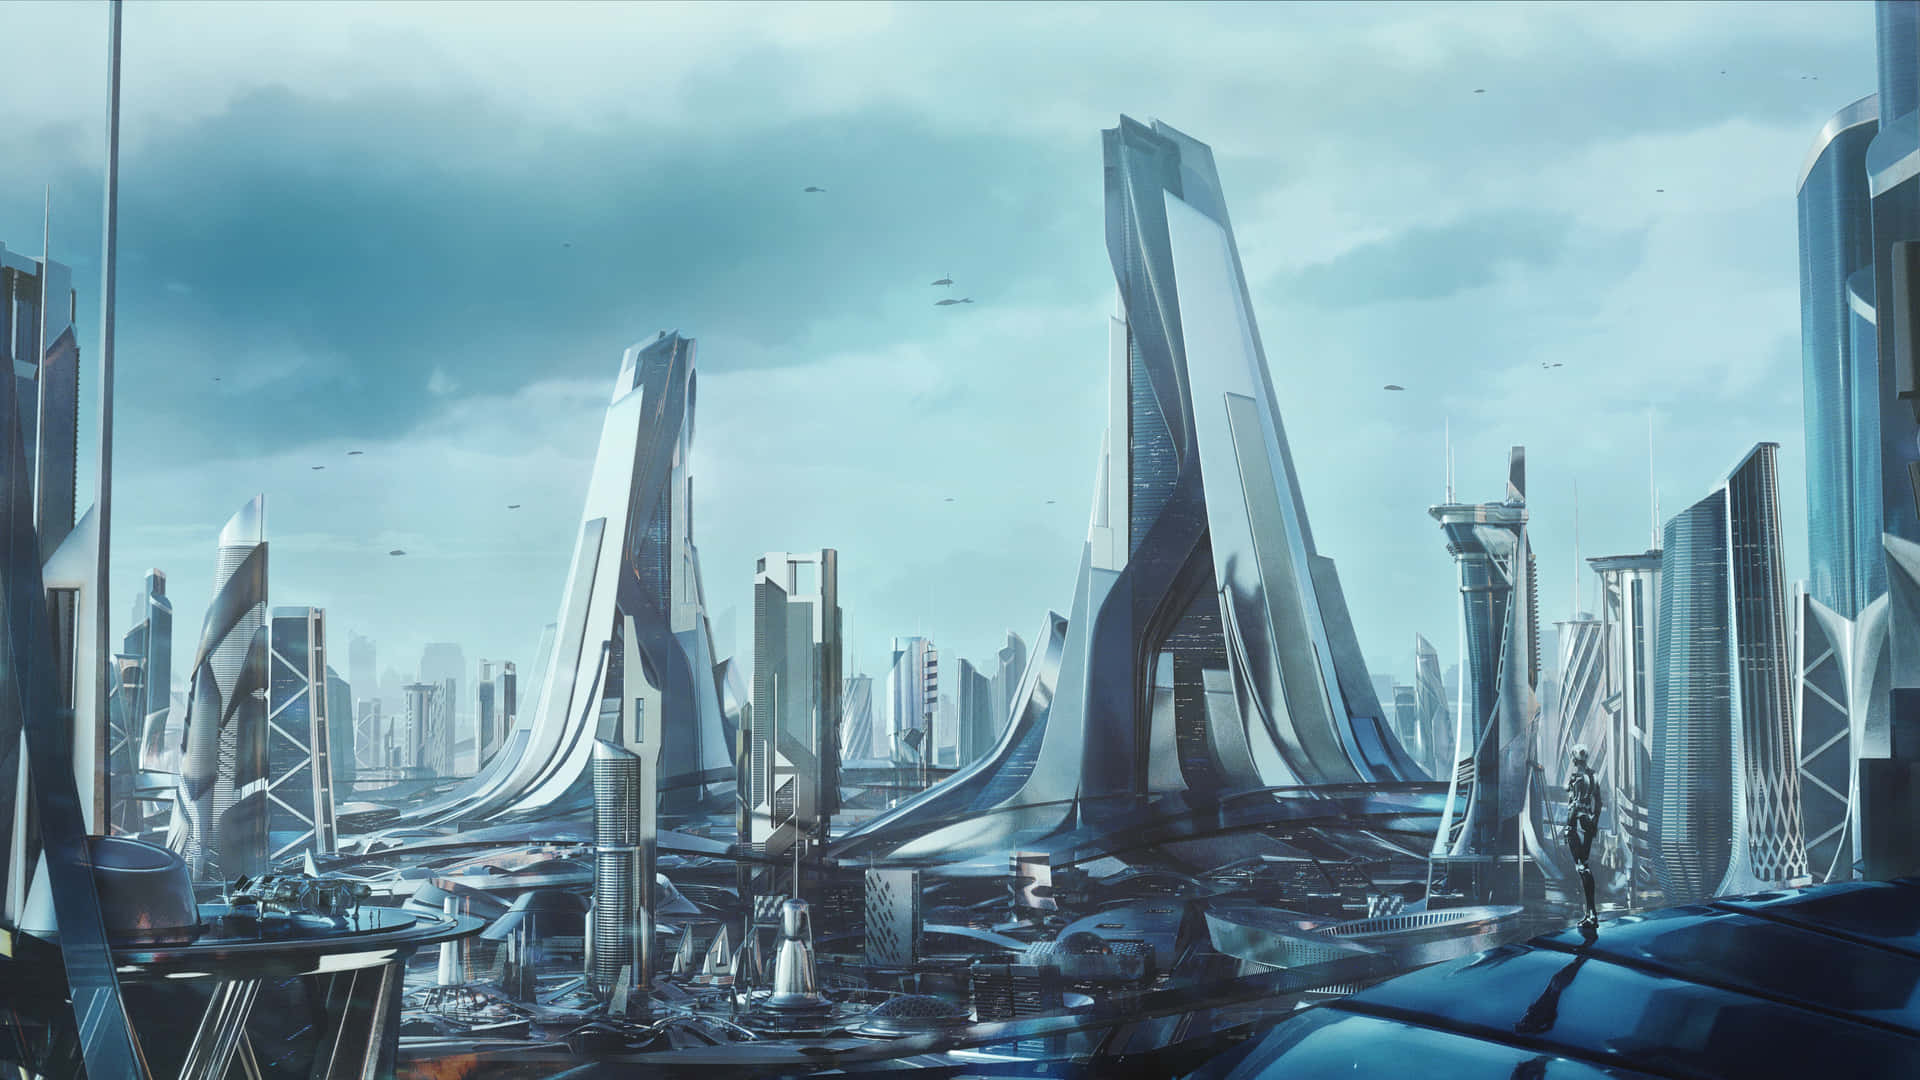 Enter Utopia in a Futuristic City